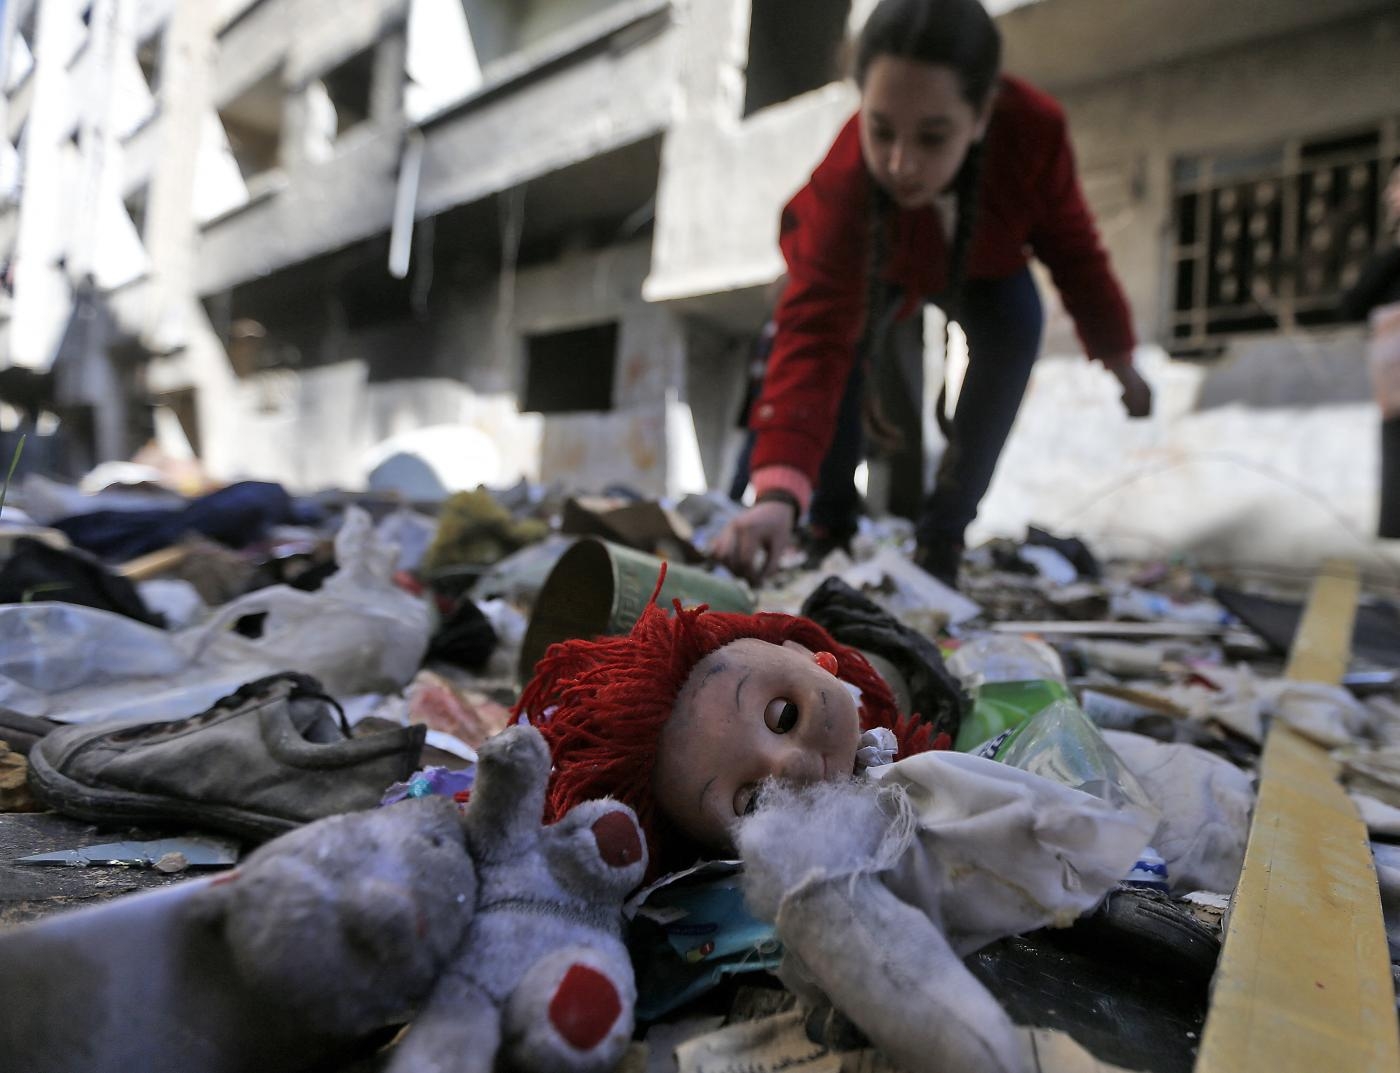 Une jeune fille fouille dans des affaires abandonnées dans les décombres des rues du camp palestinien de Yarmouk, dans la banlieue sud de la capitale syrienne Damas, le 25 novembre 2020 (AFP)